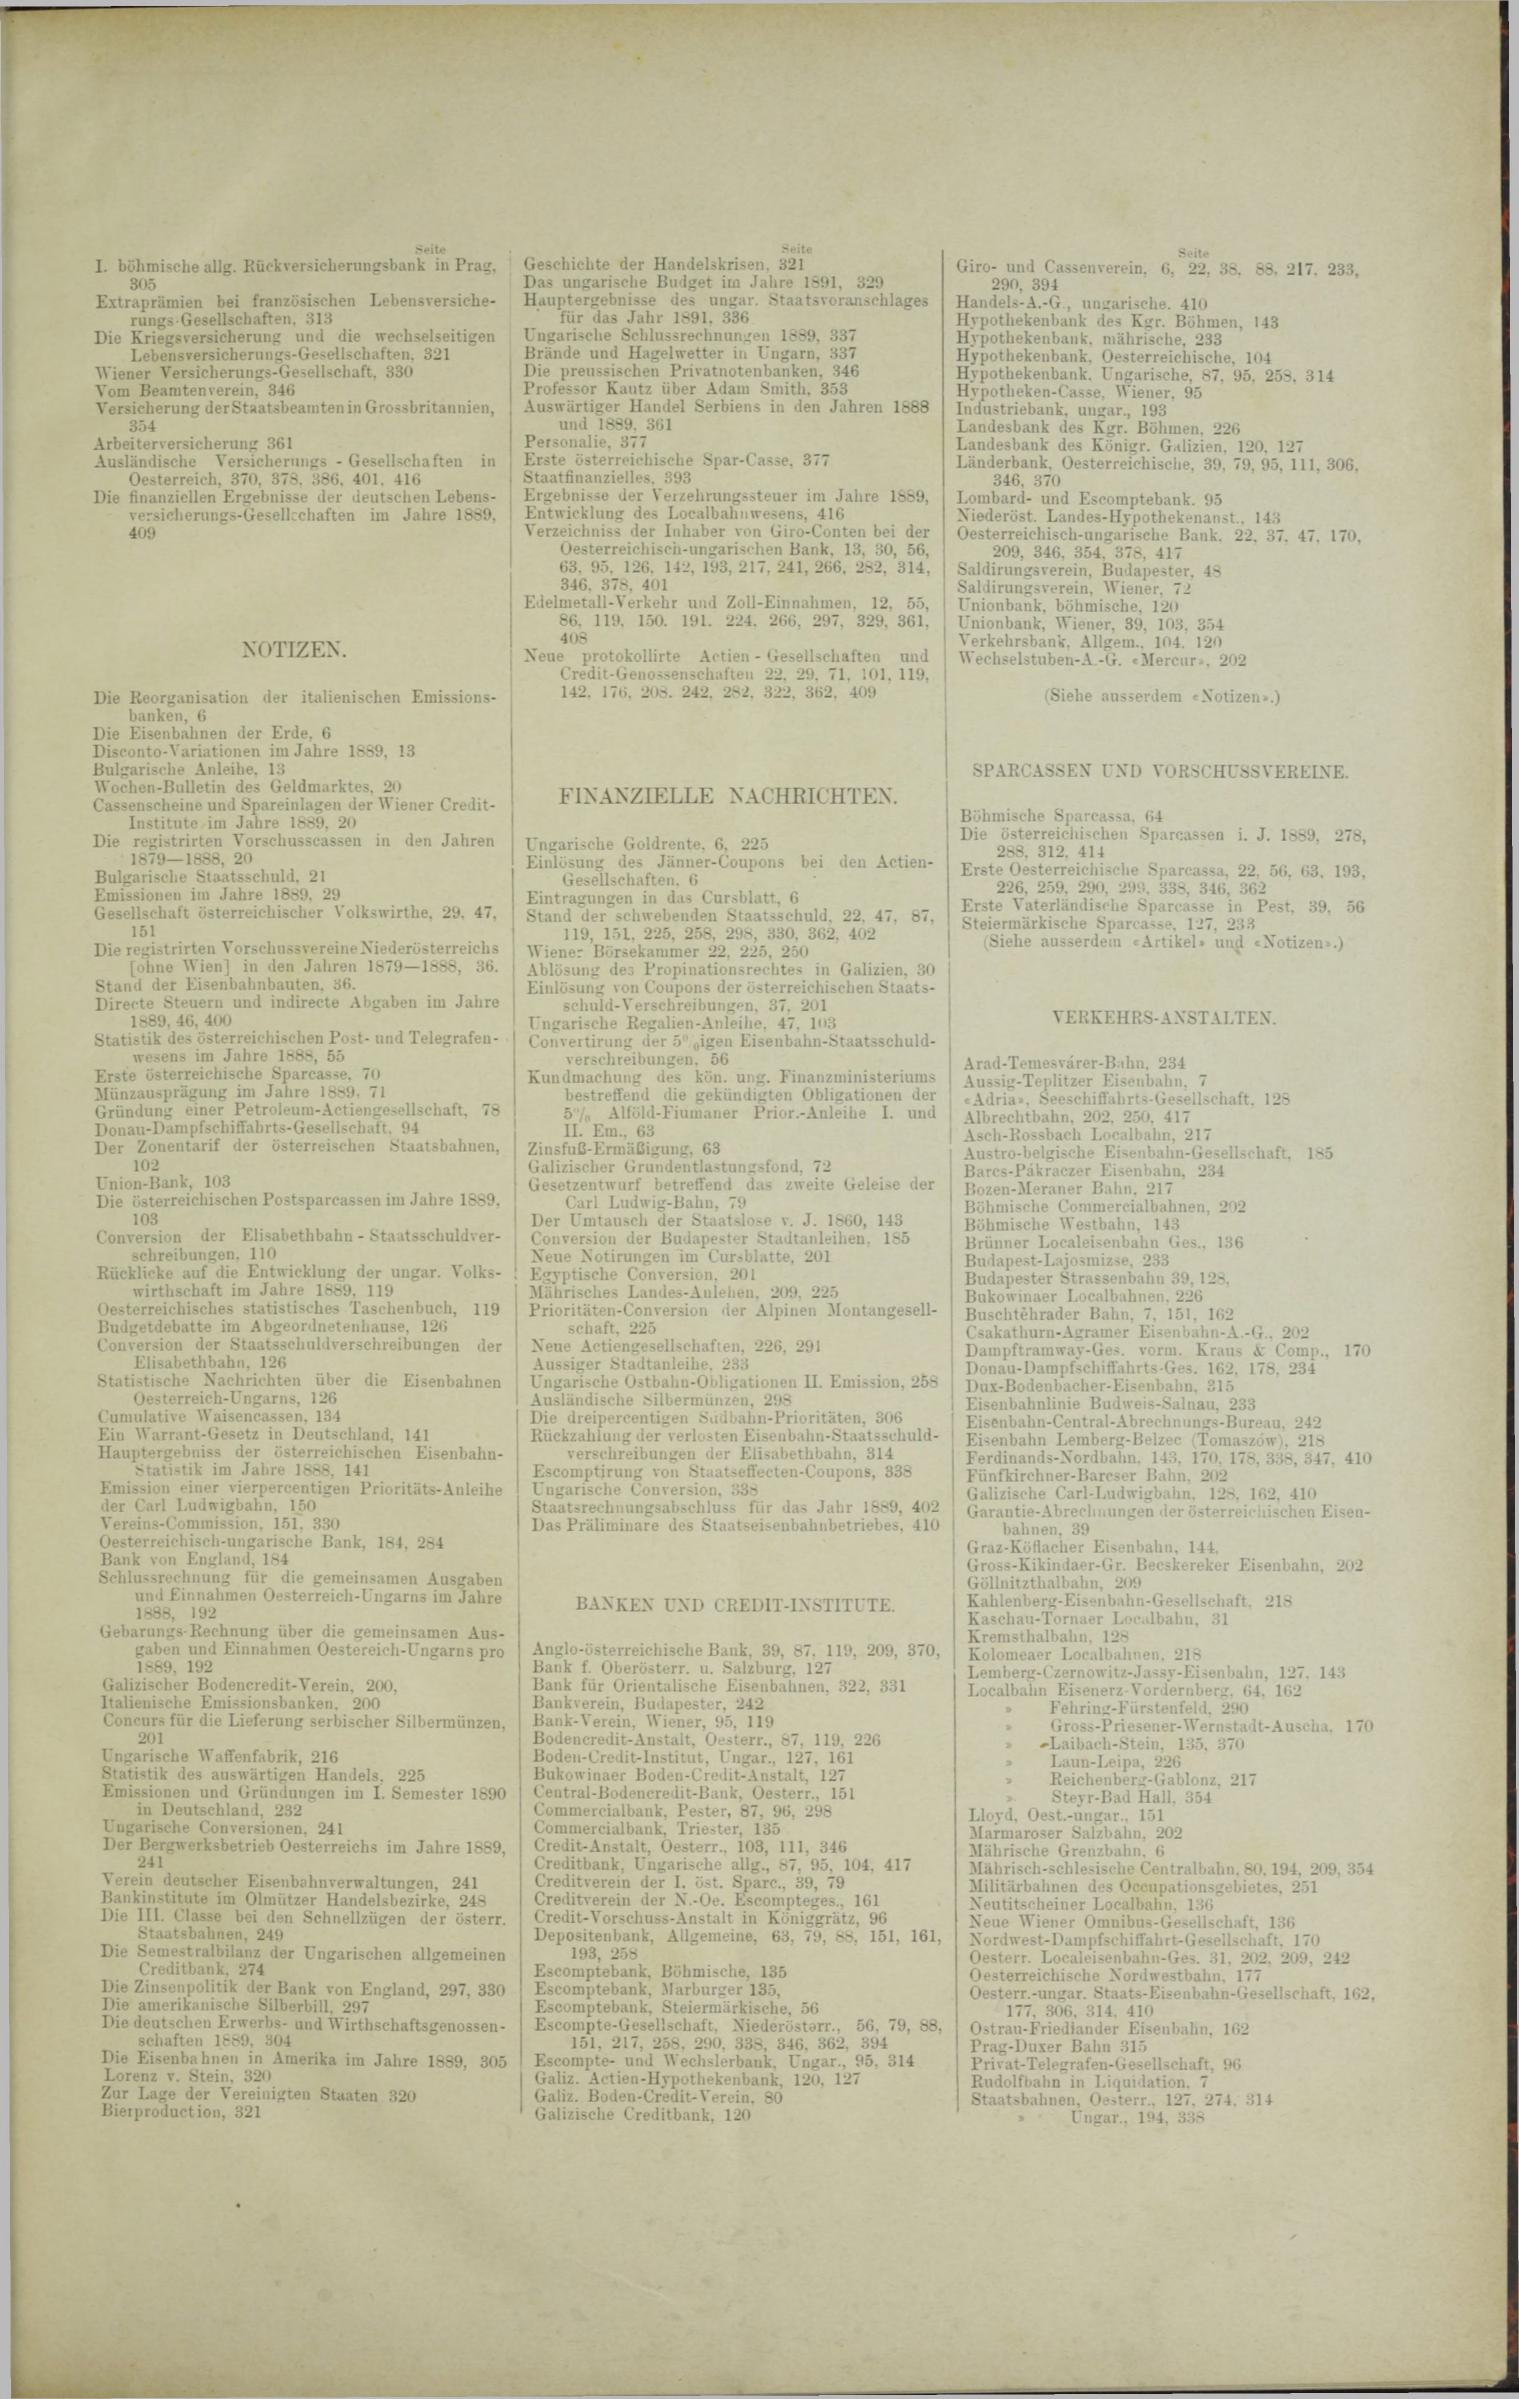 Der Tresor 04.09.1890 - Seite 11